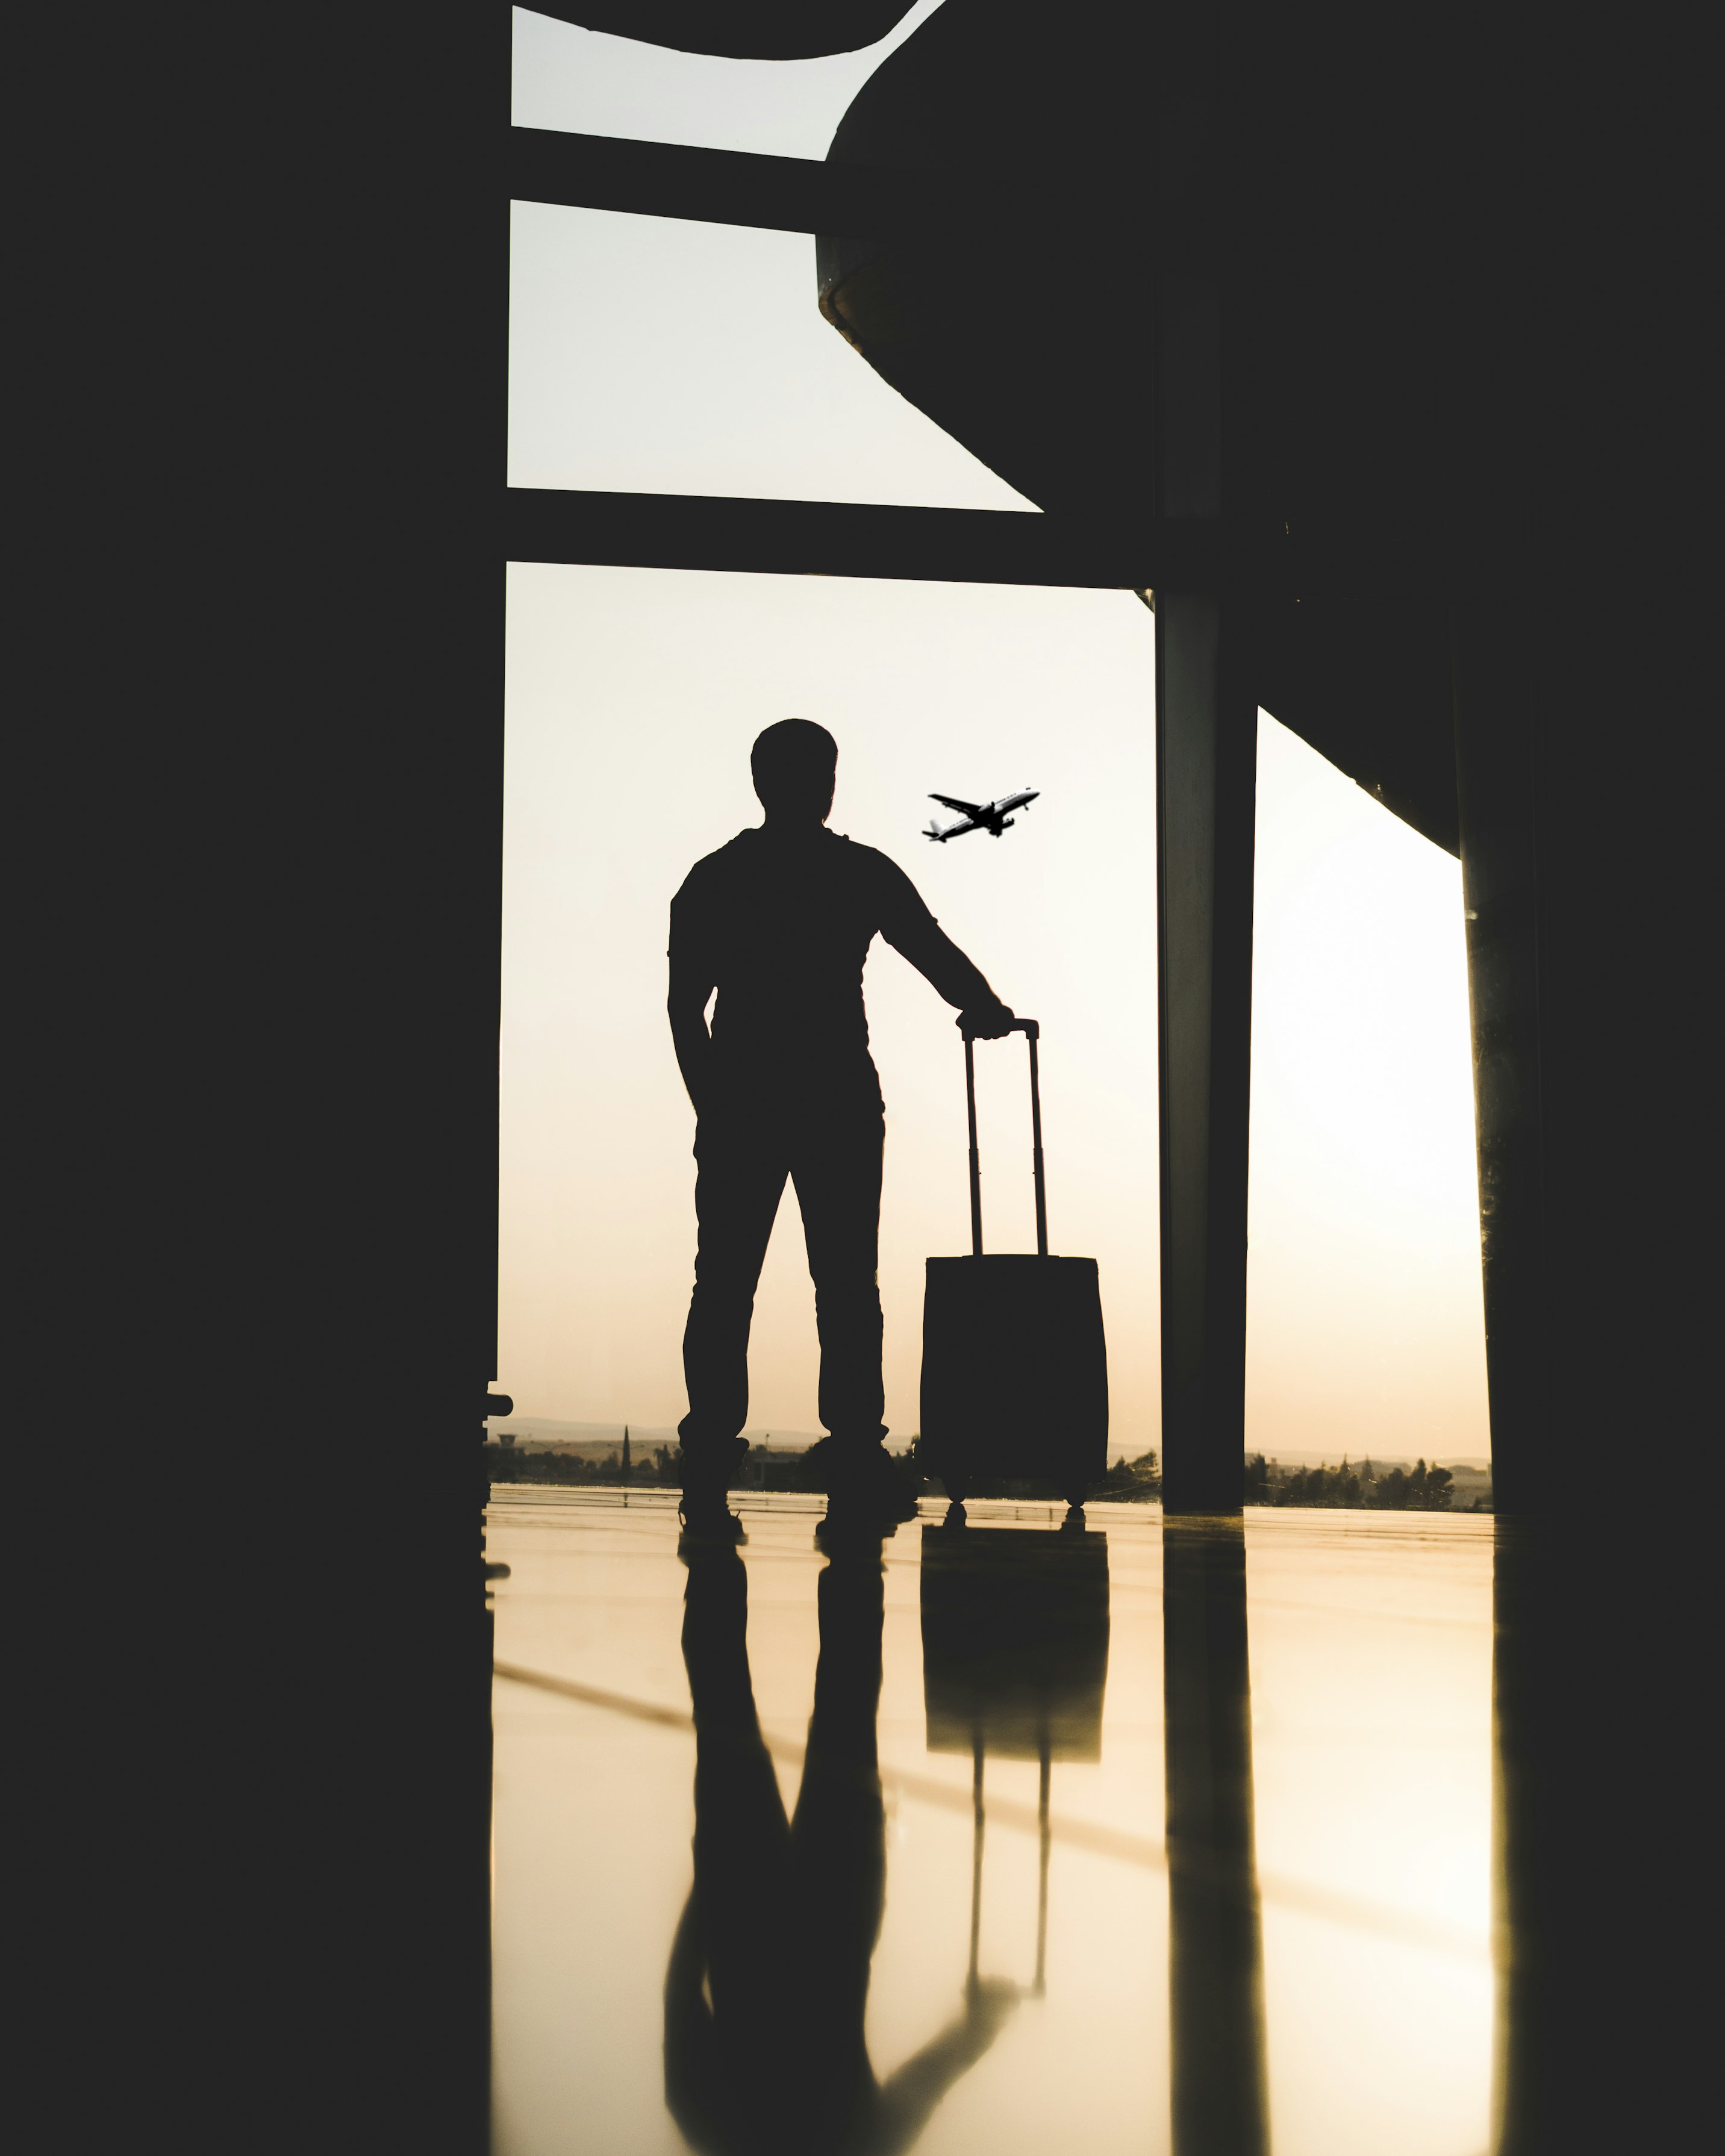 NS Taxi Genk - afbeelding van silhouet van man met bagage binnen luchthaven